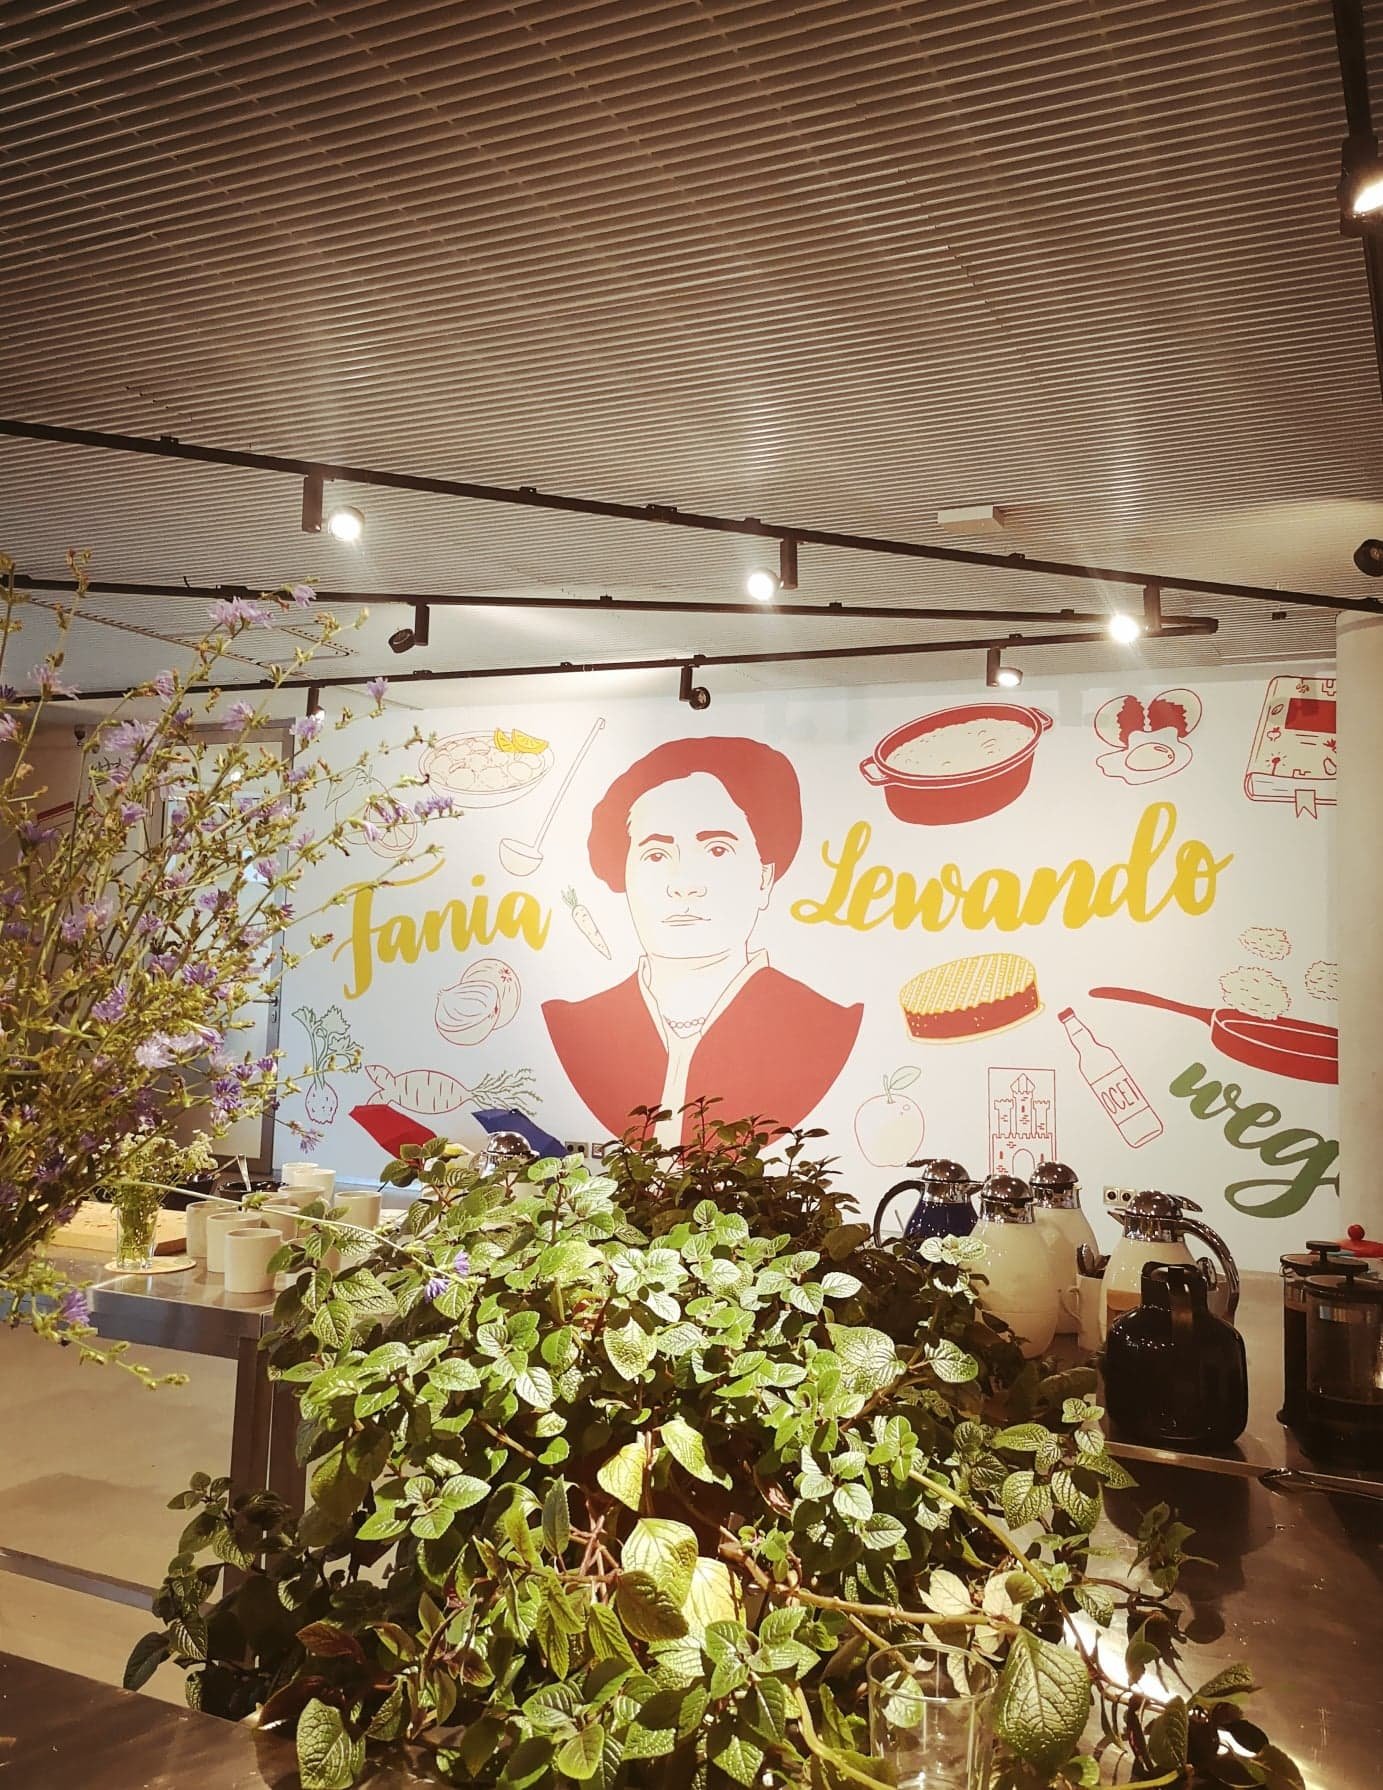 zdjęcie przedstawiające mural we wnętrzu z napisem Fania Lewanso i portretem kobiety